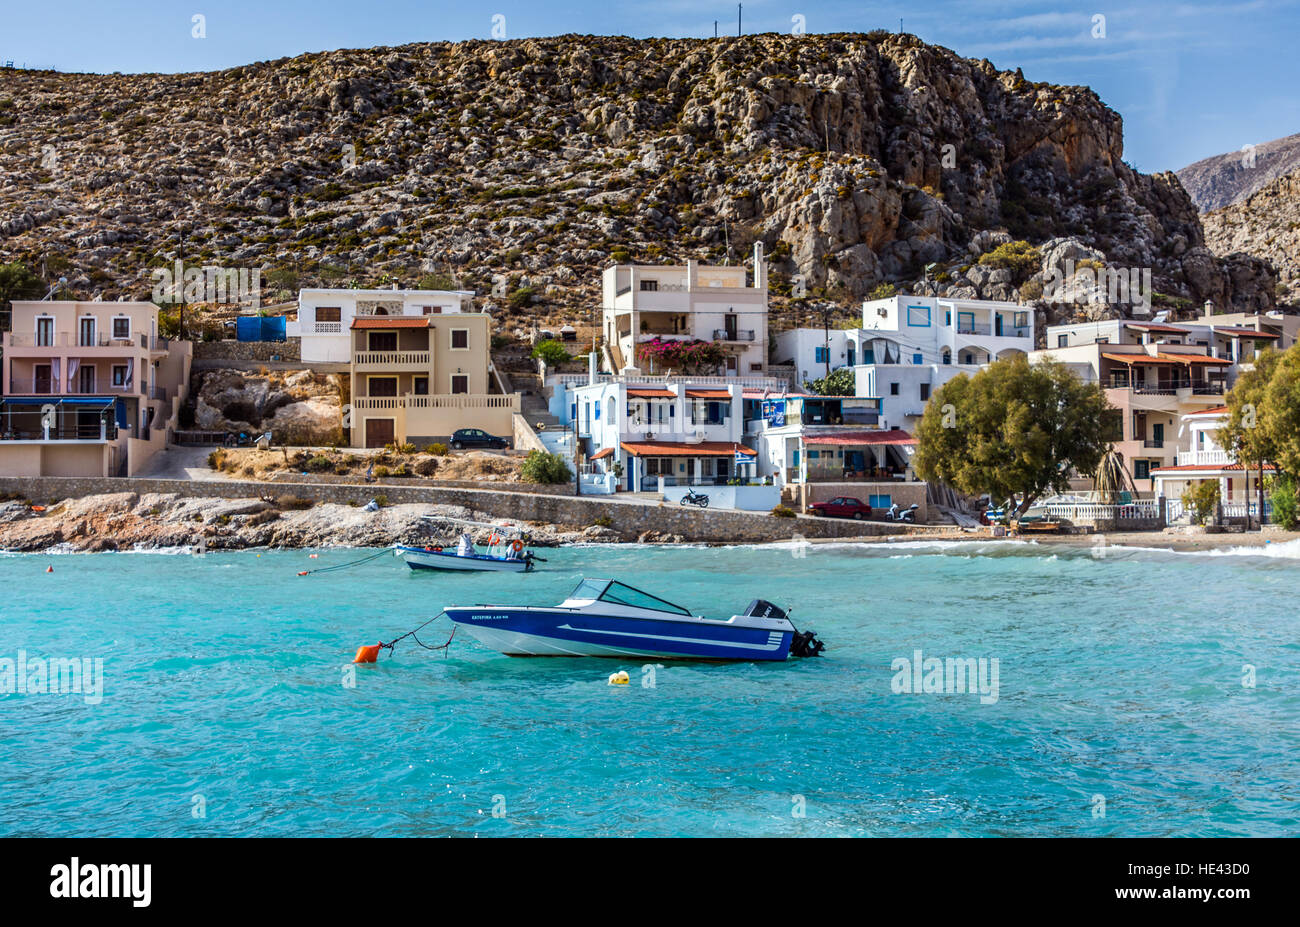 Pequeña lancha en mar azul aguamarina con casas que rodean la bahía de estilo griego Foto de stock